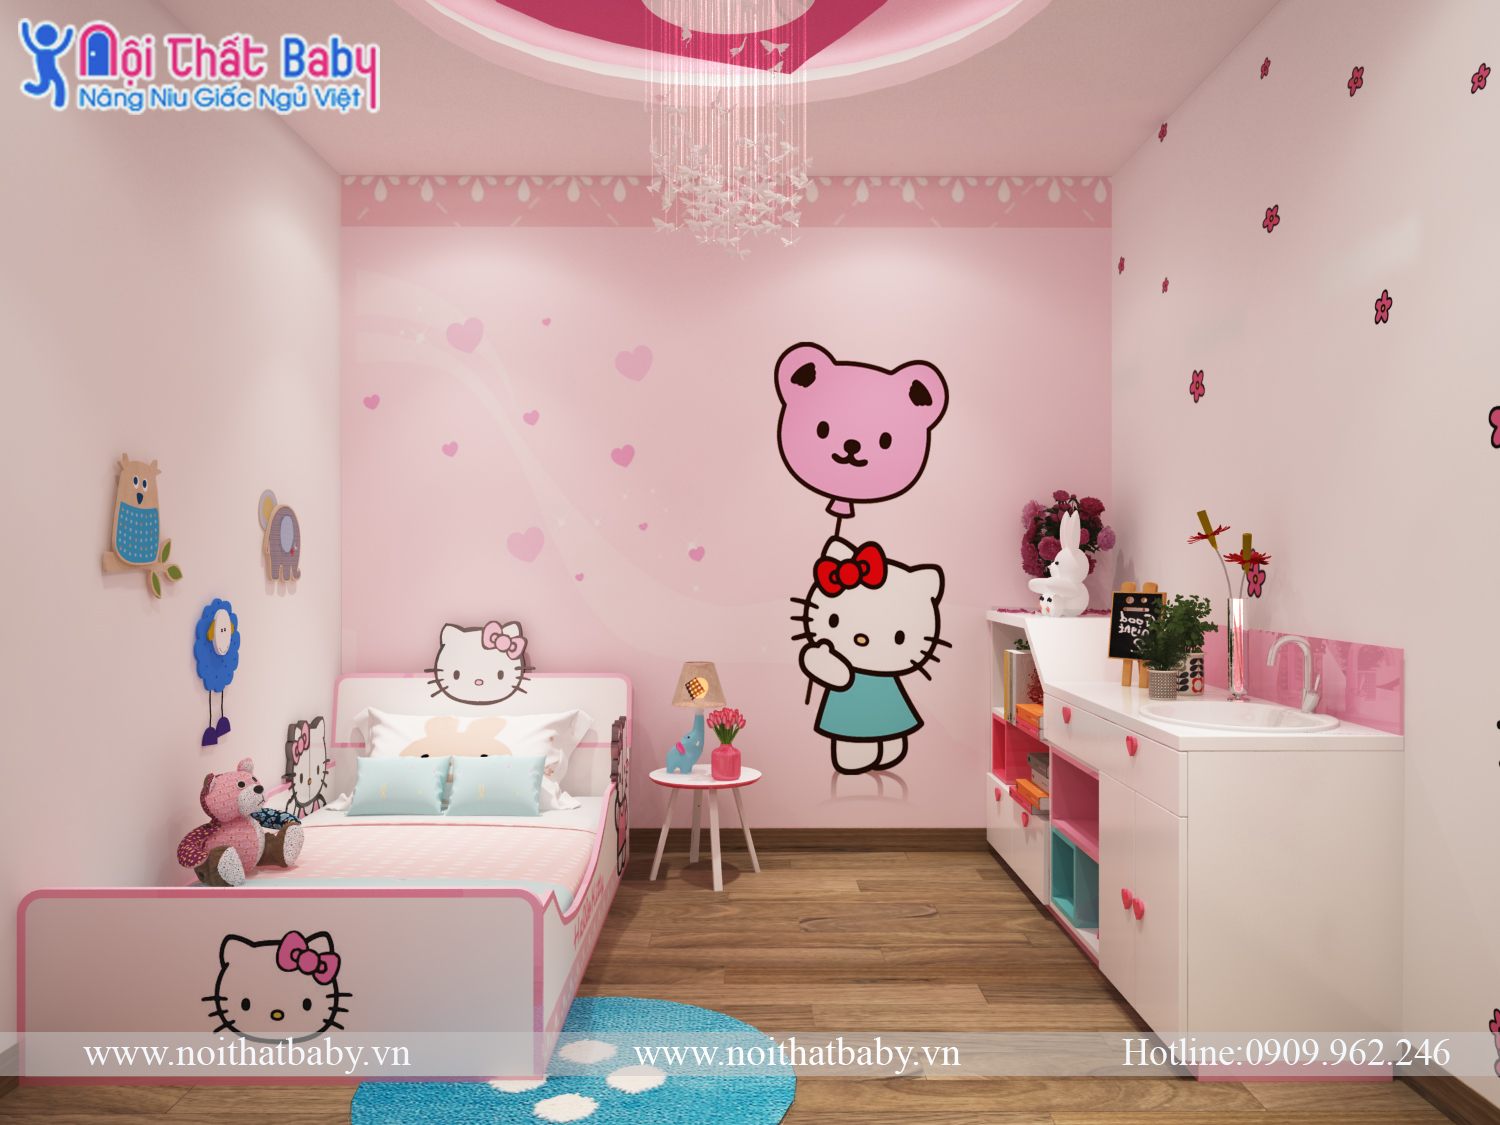 Giường ngủ Hello Kitty sẽ mang lại cho bé yêu của bạn một giấc ngủ tuyệt vời. Với thiết kế độc đáo và màu hồng đáng yêu cùng với những hình ảnh của Hello Kitty, giường ngủ này sẽ làm cho bé yêu của bạn cảm thấy thoải mái và yêu thích mỗi khi đi ngủ.